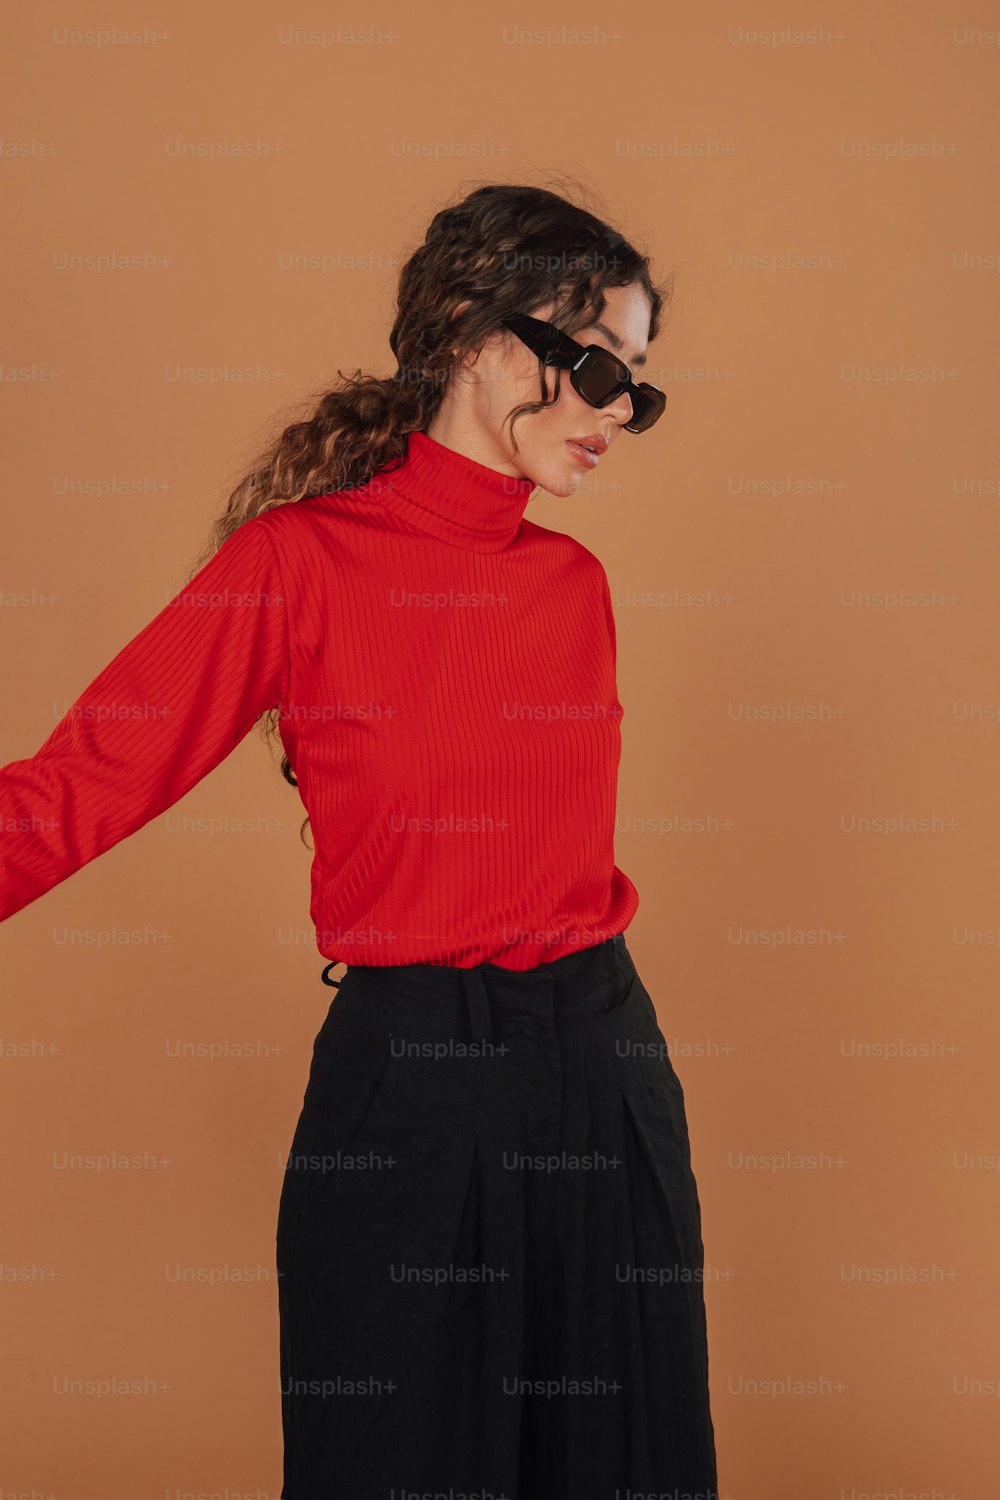 Una mujer con una camisa roja y pantalones negros